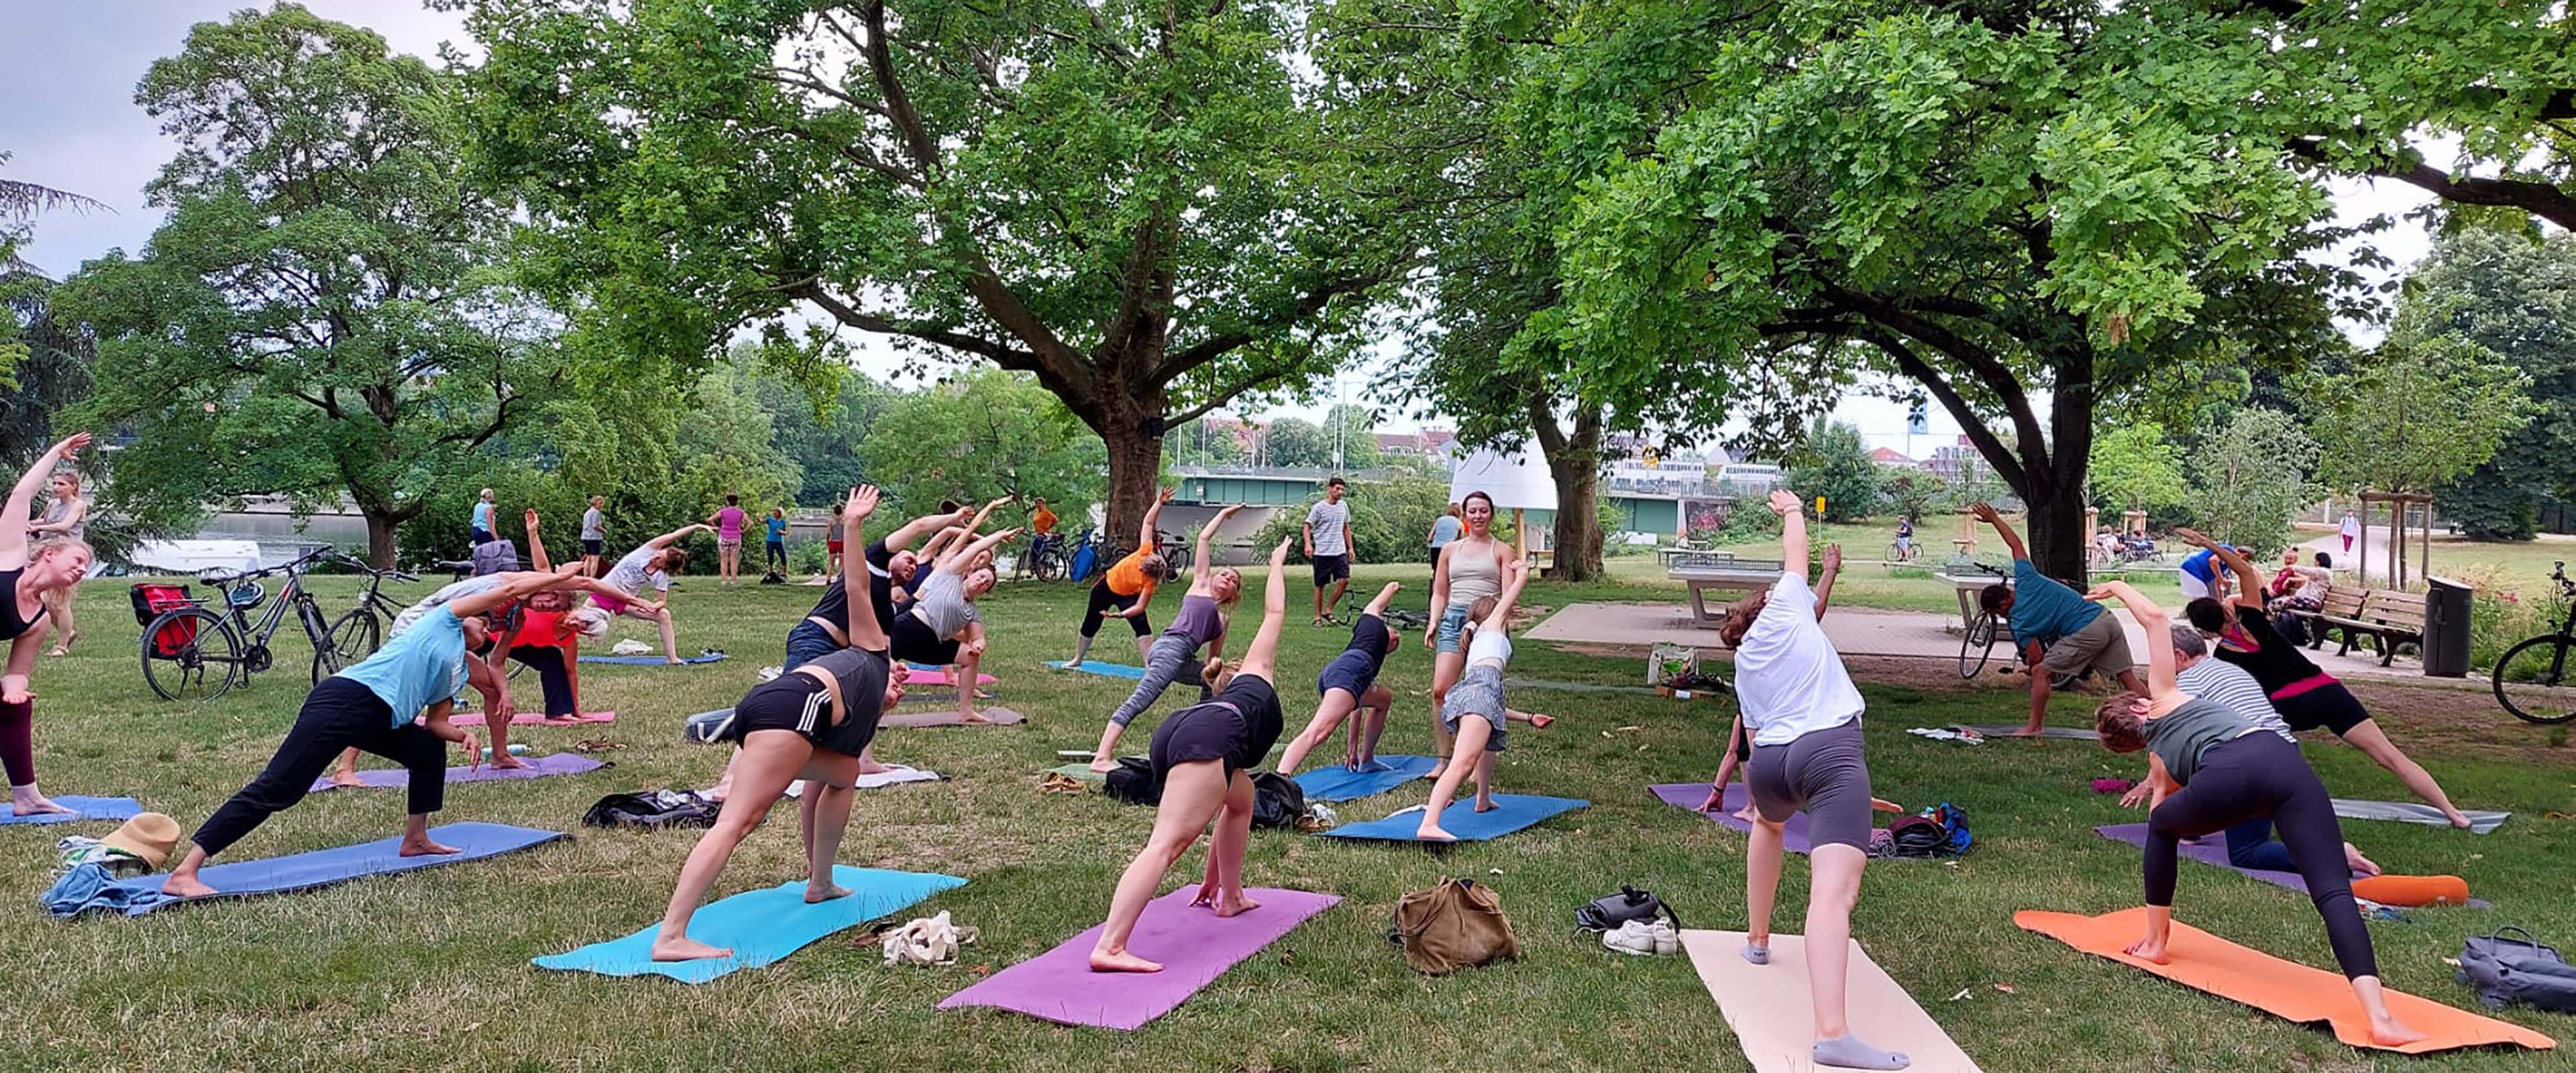 Yoga-Gruppe auf der Wiese beim Üben